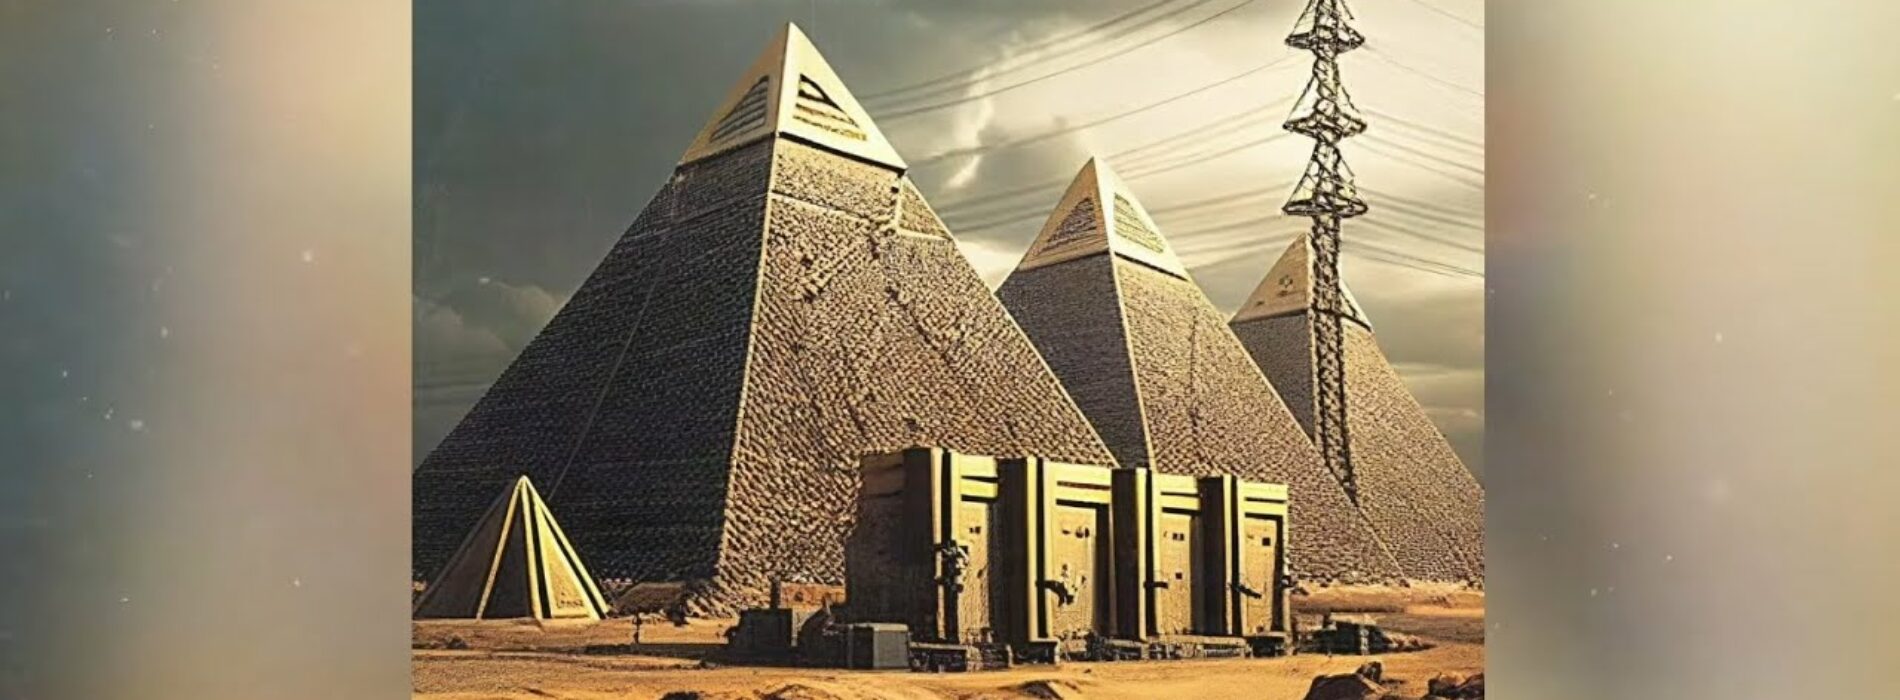 Gims : après la polémique sur les pyramides en Égypte, le rappeur sort Hernan Cortes (Audio officiel) – Avril 2023